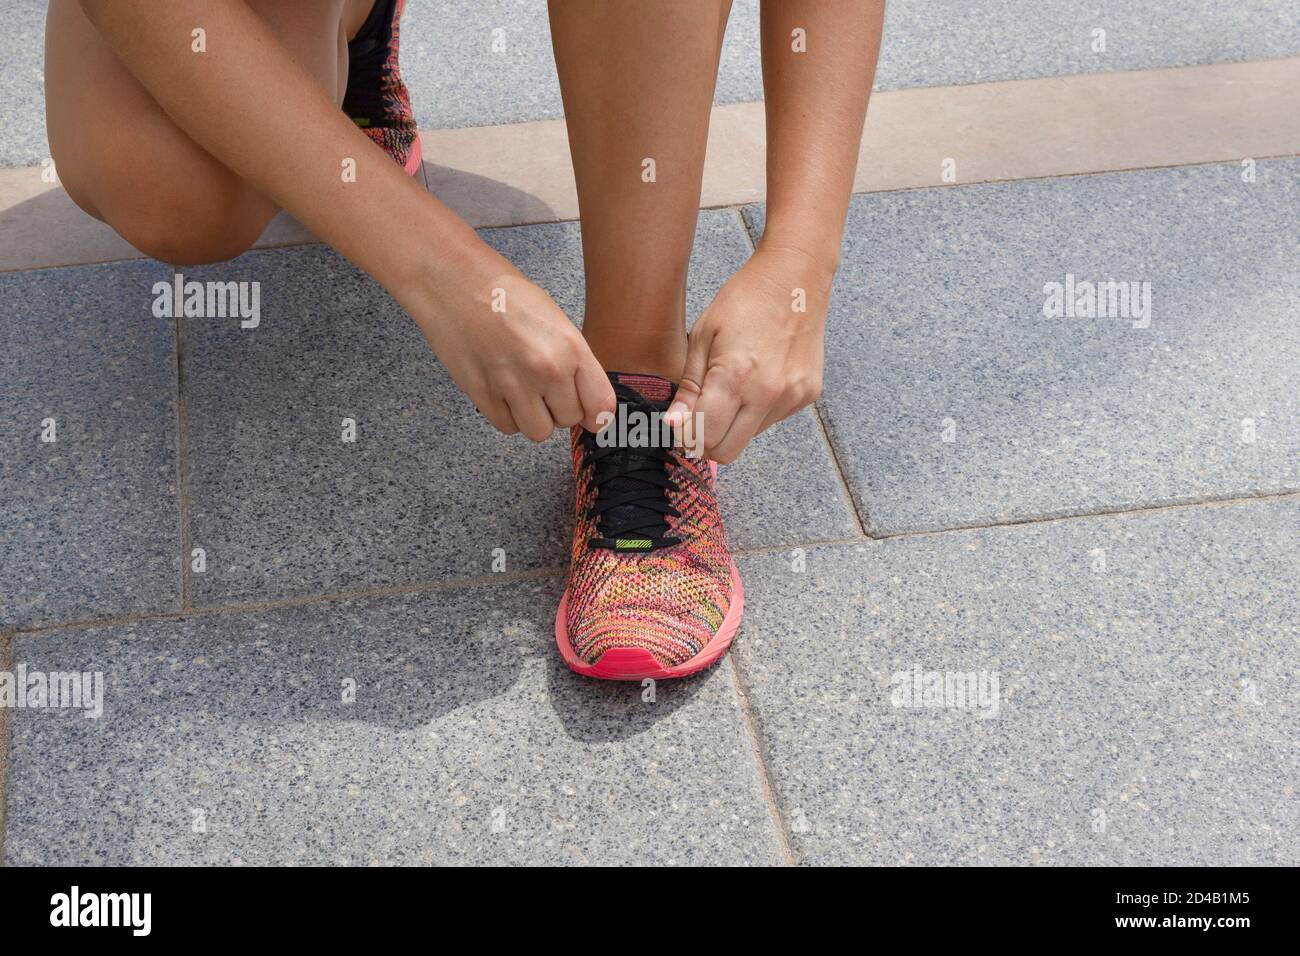 Sportliche junge Frau, die die Schnürsenkel vor dem Laufen oder Joggen bindet.Konzept von Sport und gesunder Lebensweise. Stockfoto